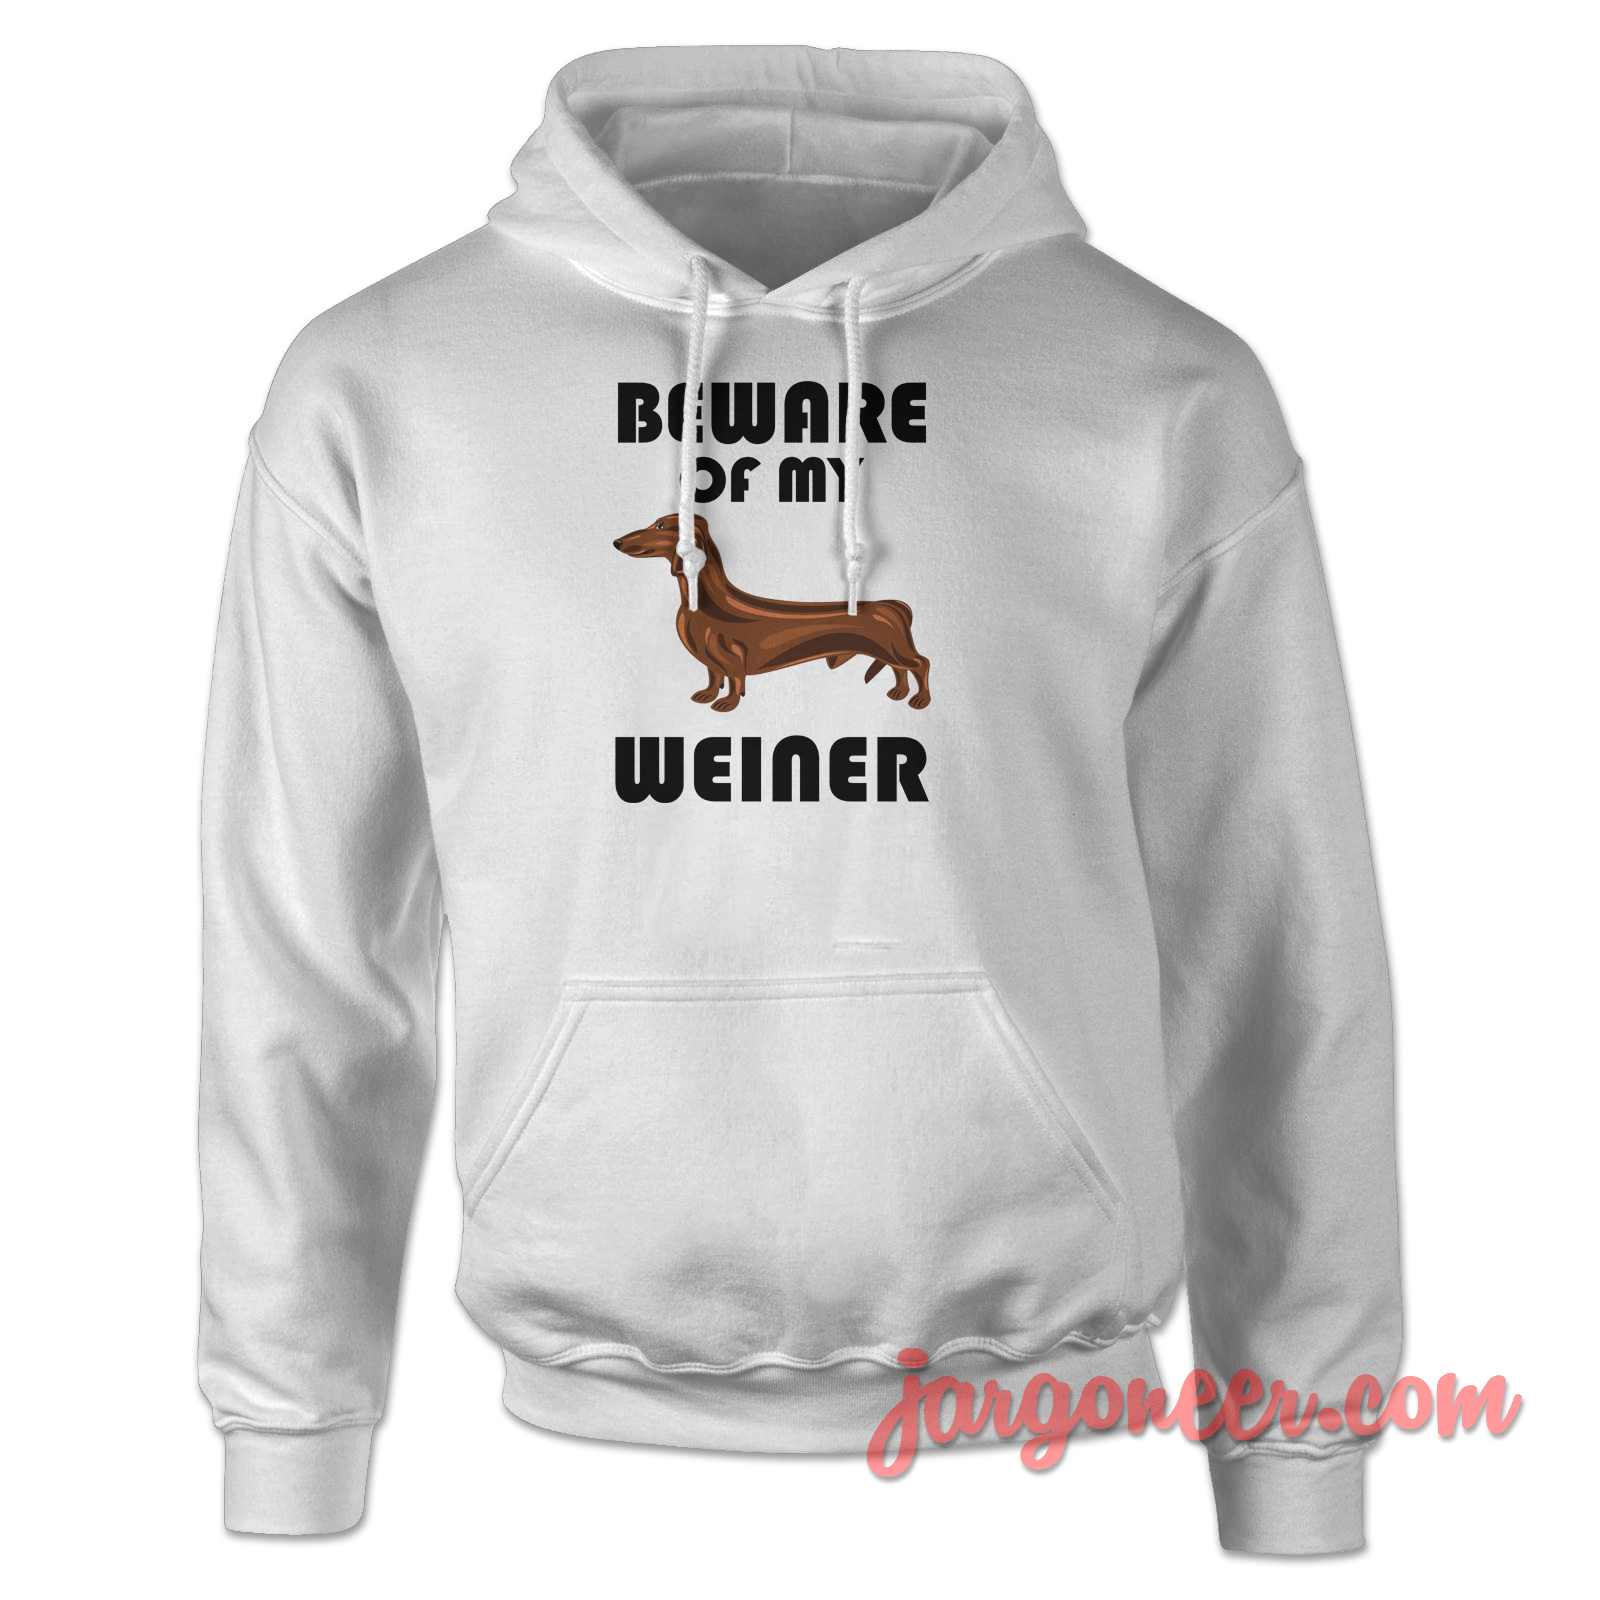 Beware Of My Weiner 2 - Shop Unique Graphic Cool Shirt Designs